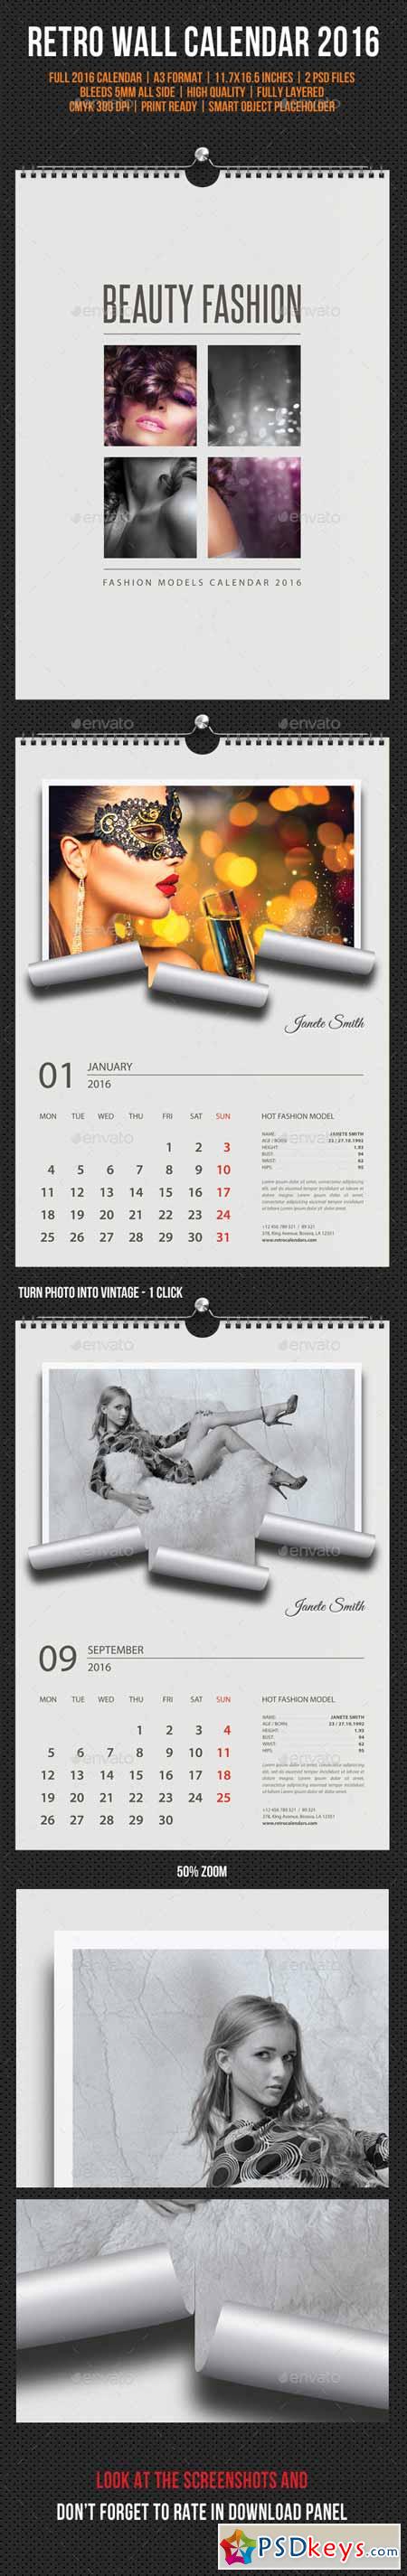 Wall Calendar 2016 Retro Photo V02 11827782